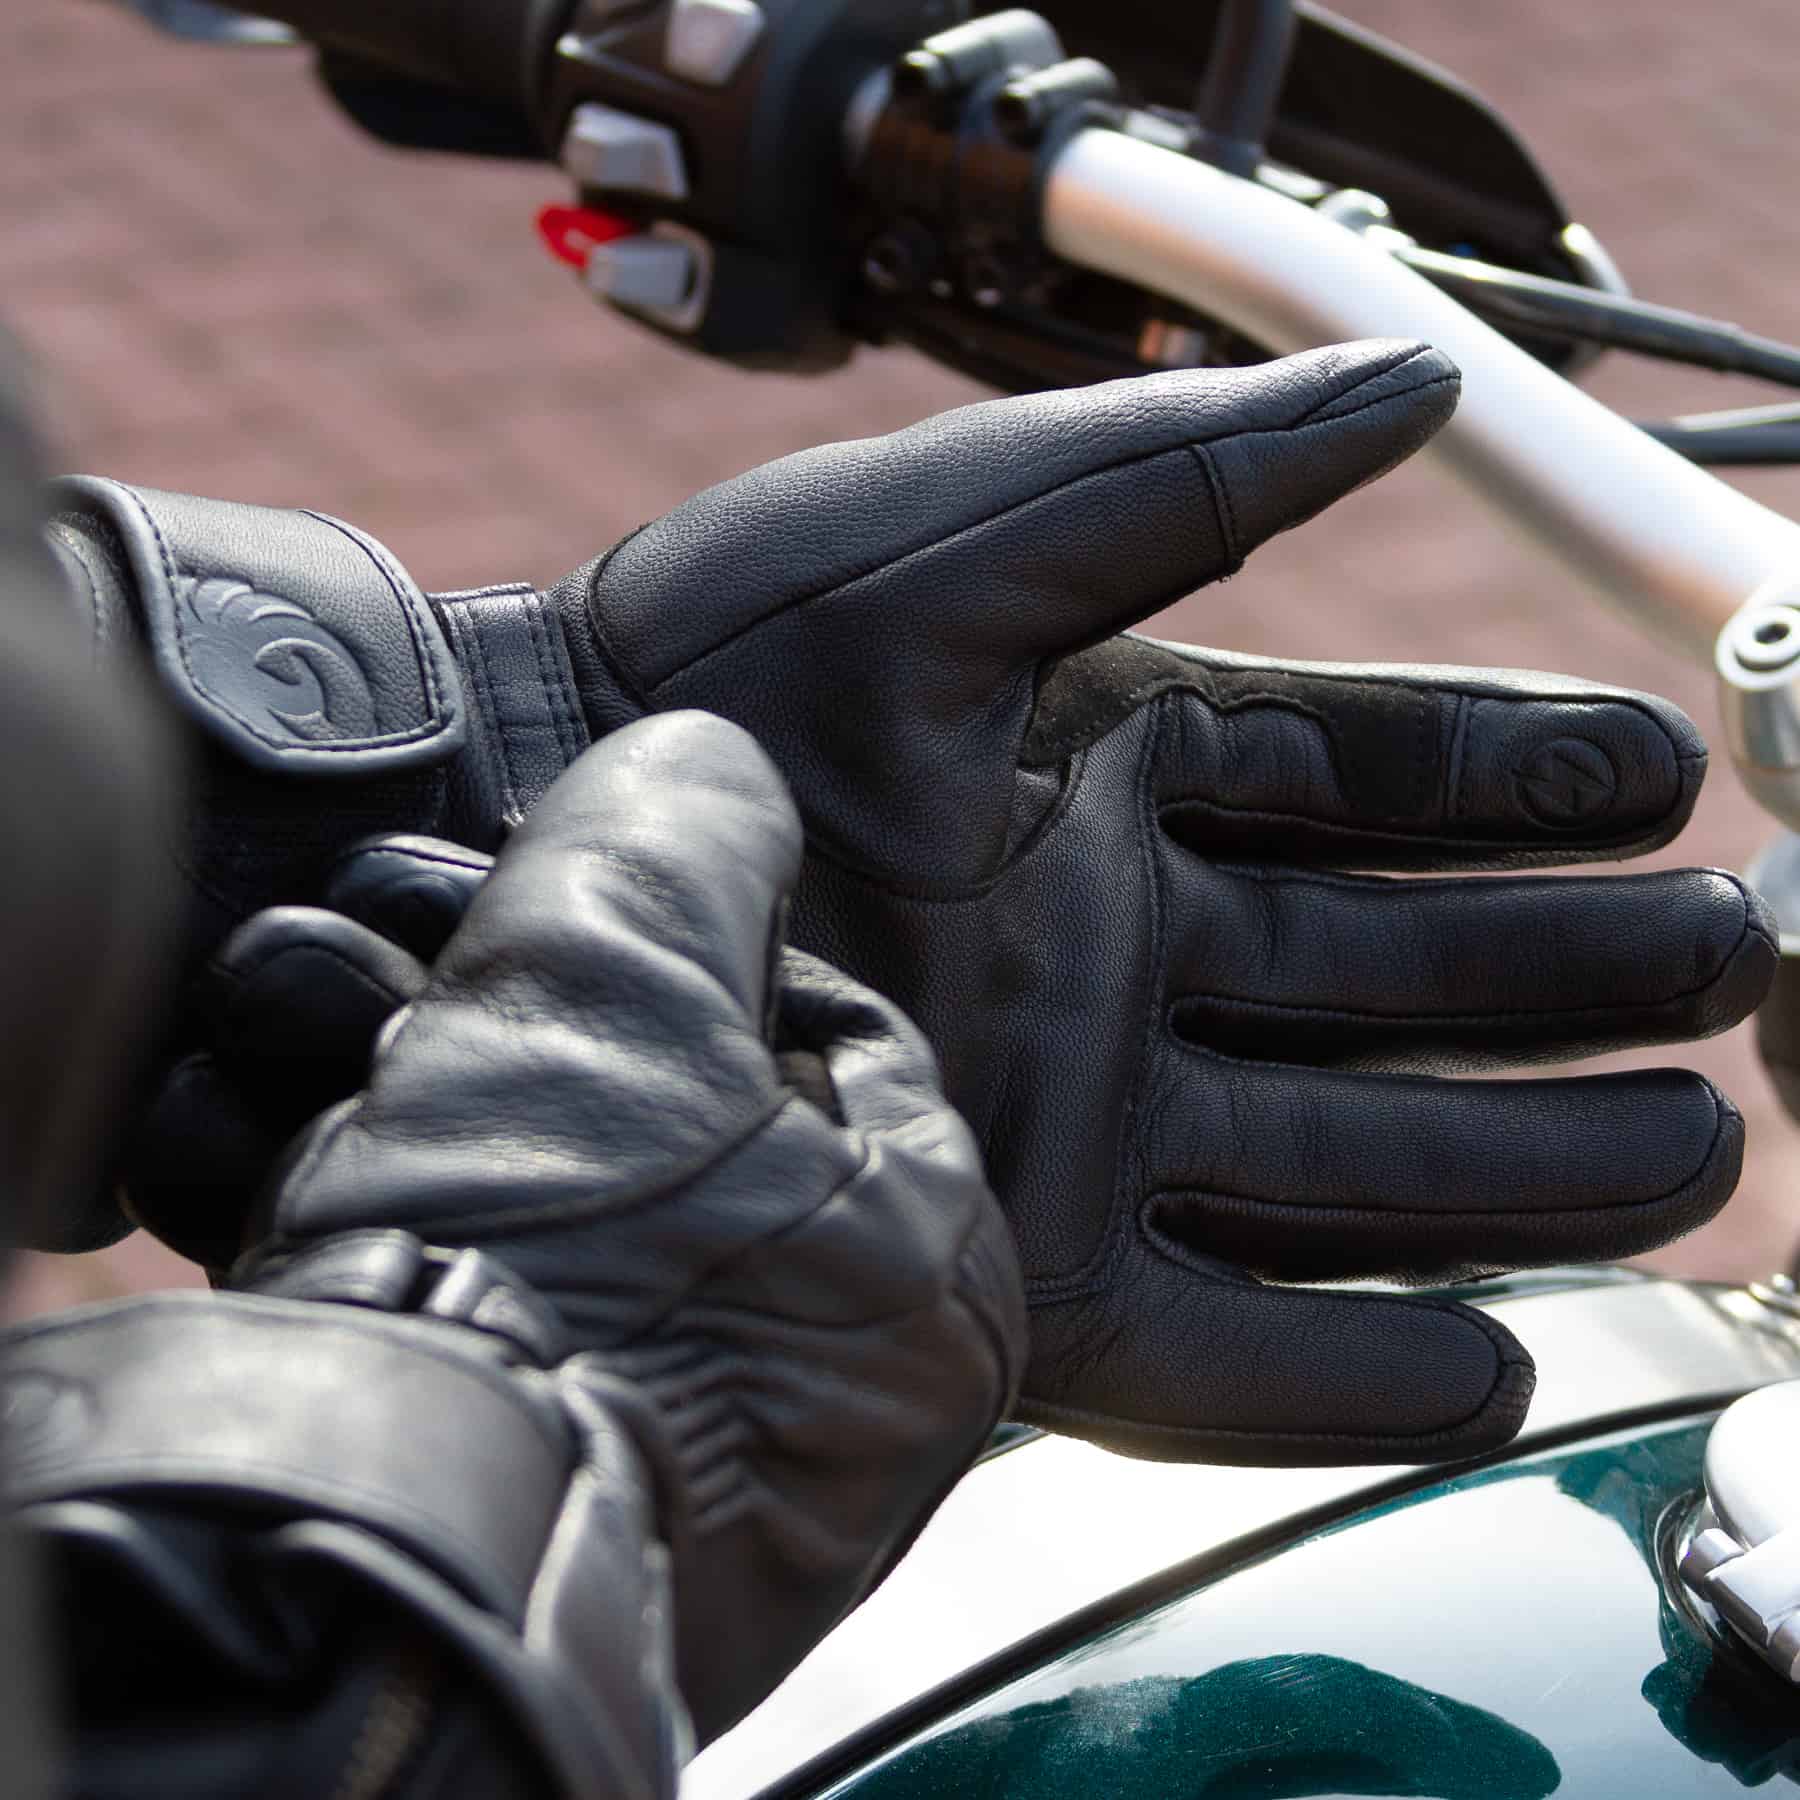 Merlin Minworth Heated motorcycle glove in black